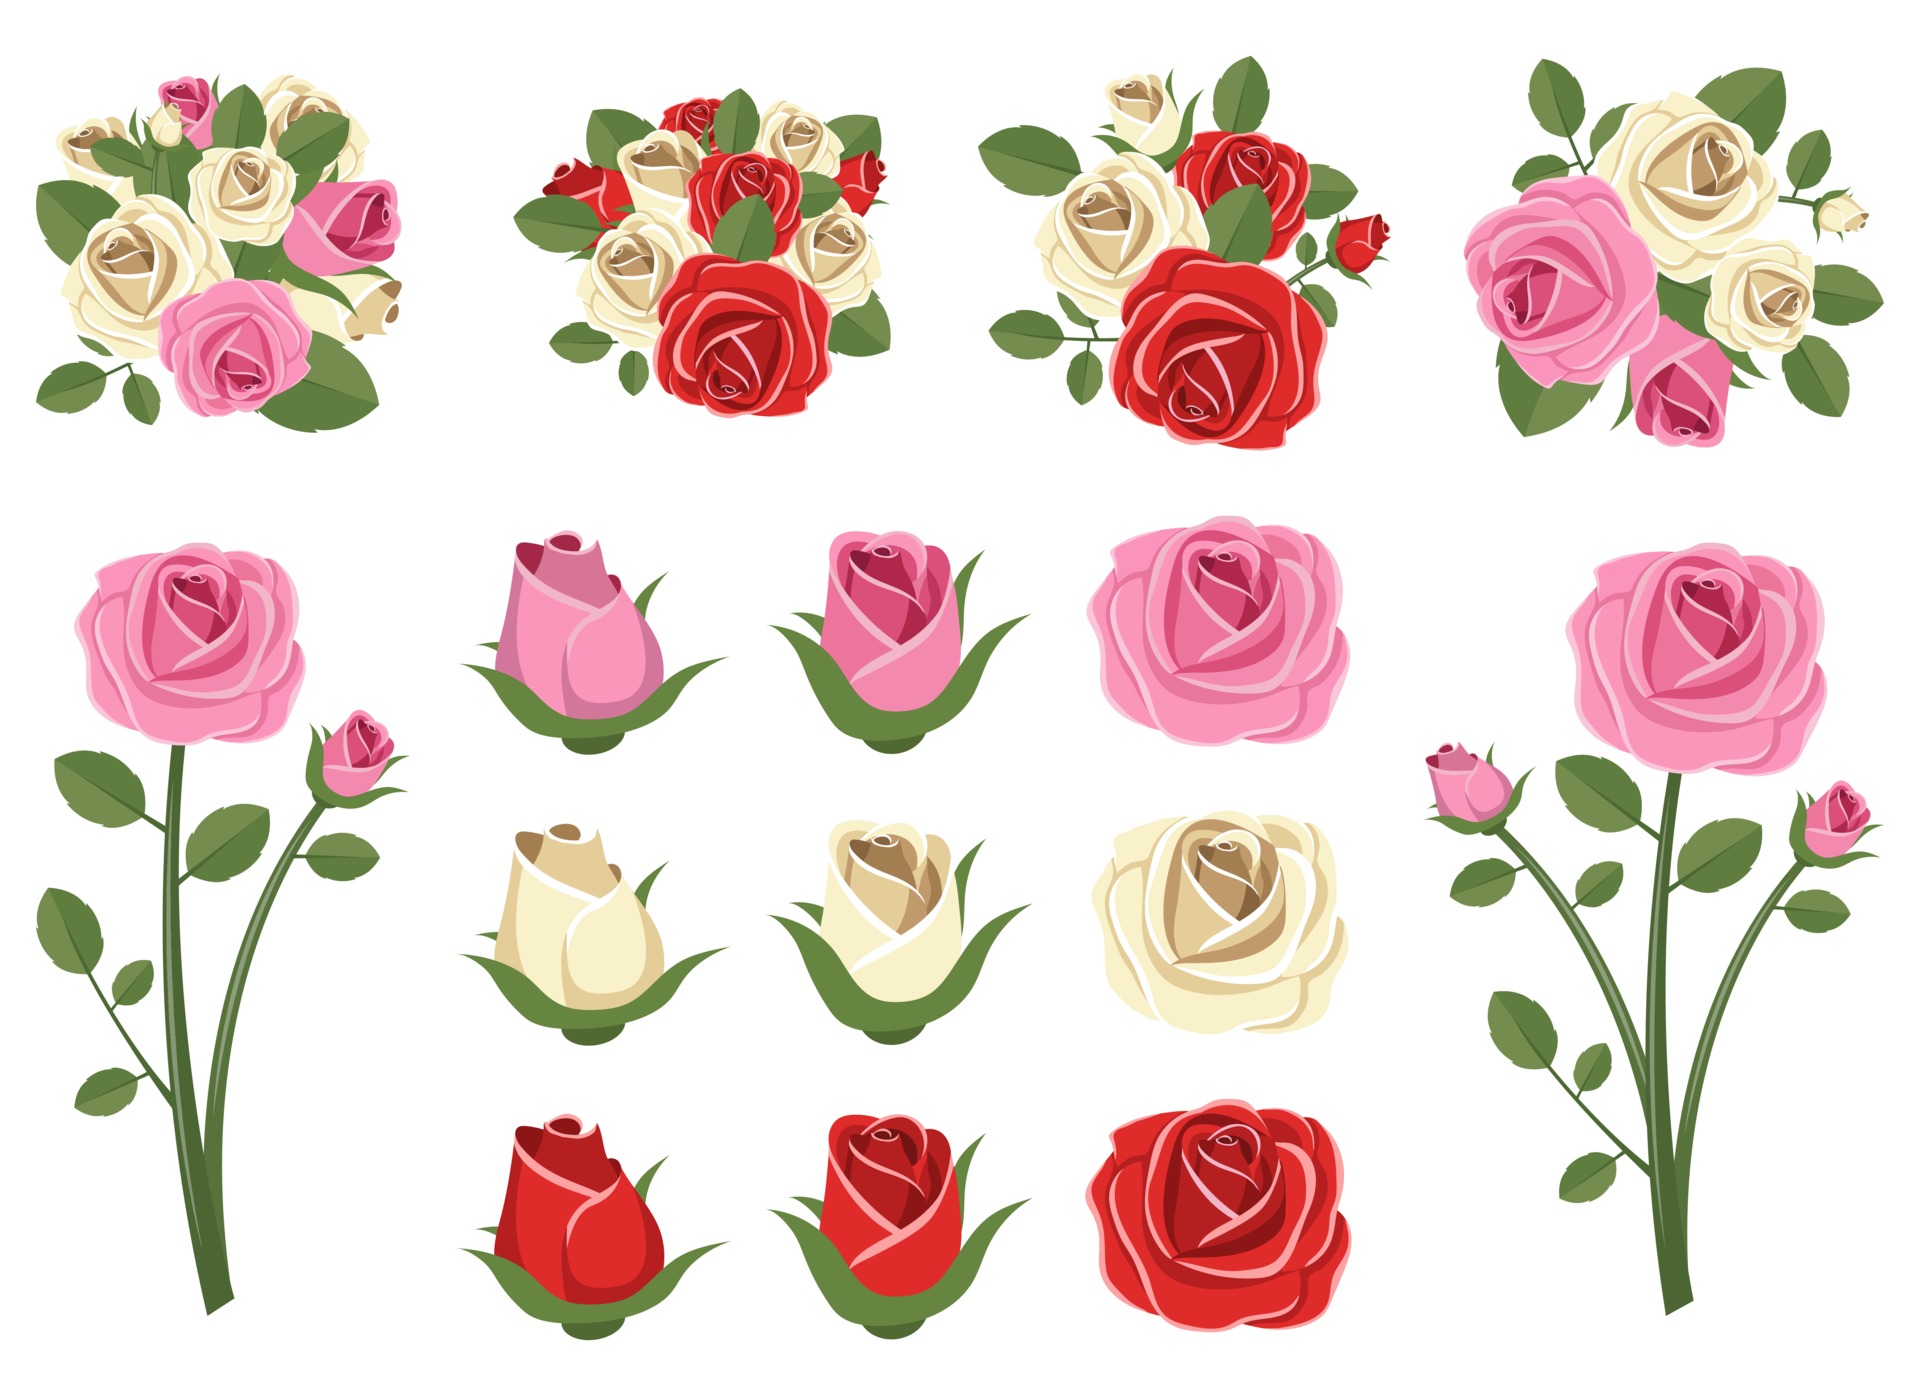 Thiết kế vector hoa hồng cổ điển được phân loại trên nền trắng đẹp mắt và dễ dàng đưa vào tác phẩm của bạn. Với độ sắc nét và chi tiết của mỗi bông hoa, bạn có thể tạo ra những tác phẩm hoàn toàn mới và độc đáo. Hãy tưởng tượng đến những gì bạn có thể làm với thiết kế vector này.